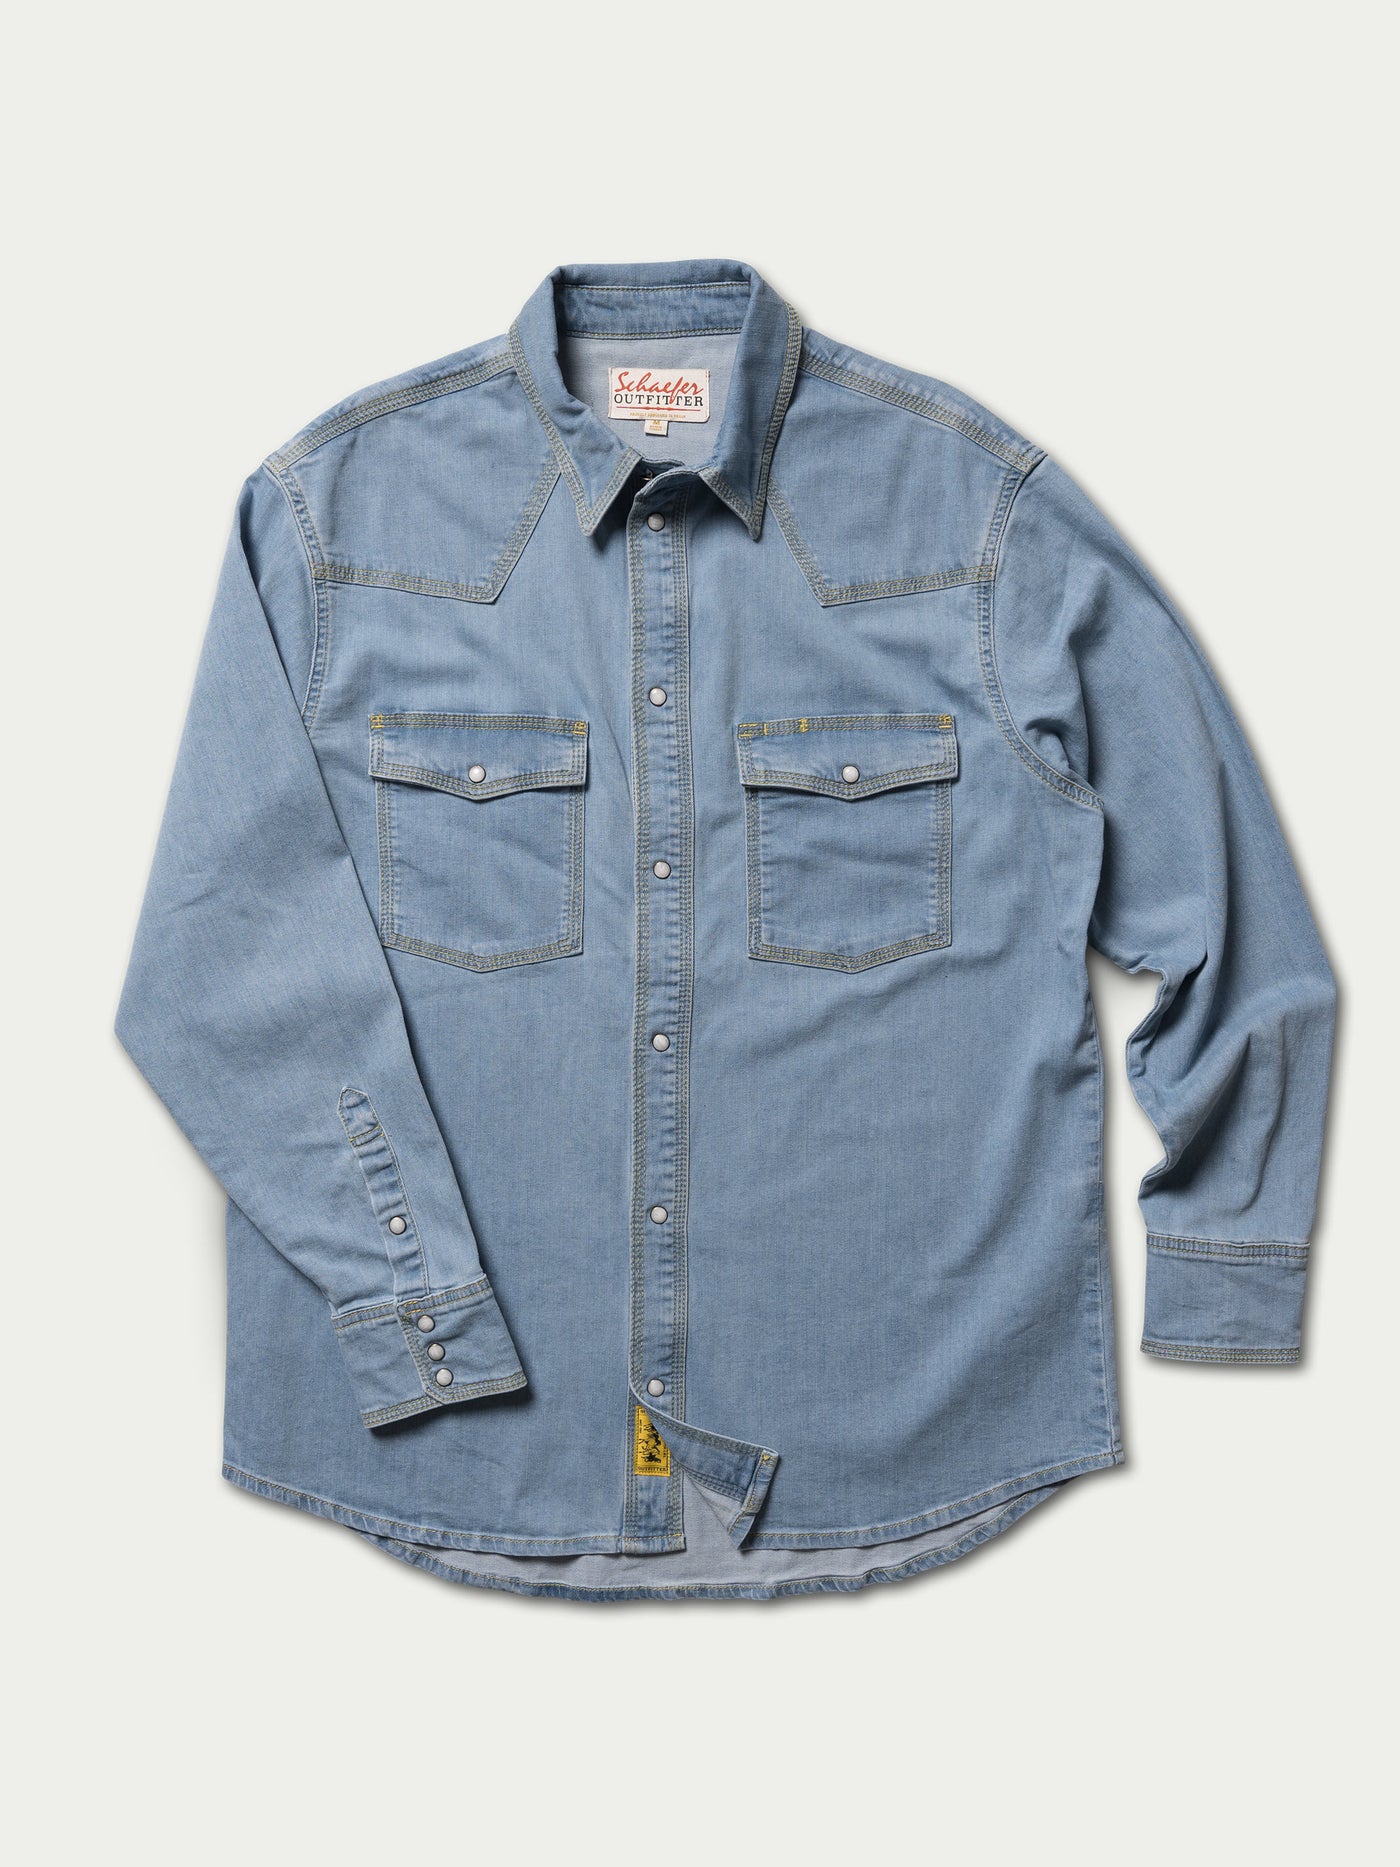 Classic Western Denim Snap Shirt - Schaefer Outfitter